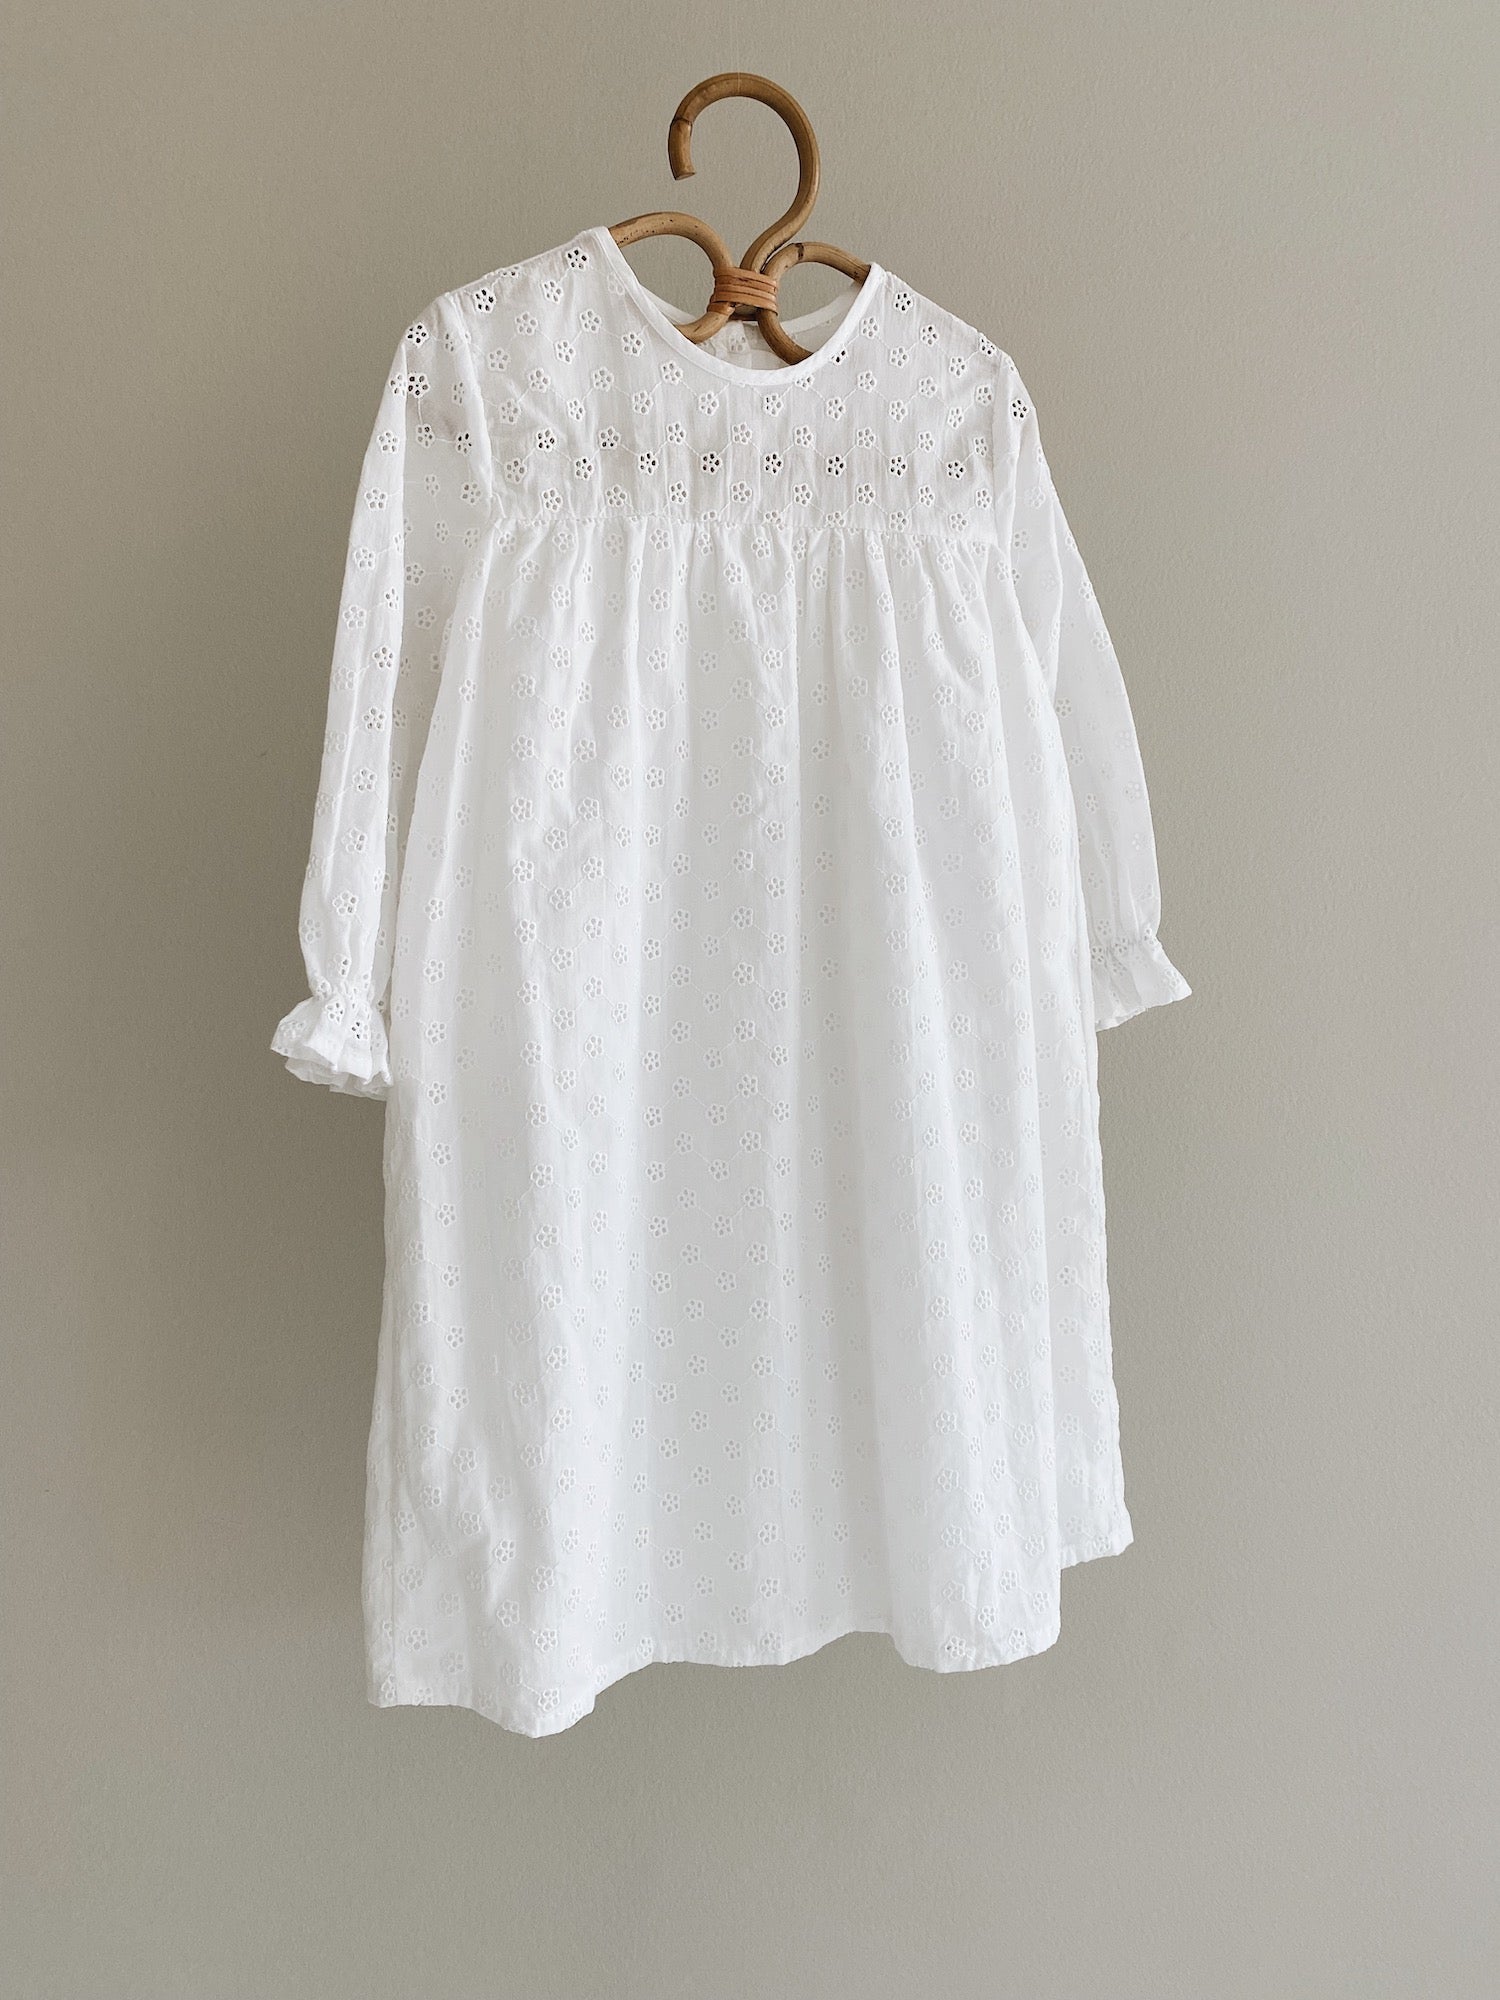 Lilou dress anglaise (kids) – lalaby.com